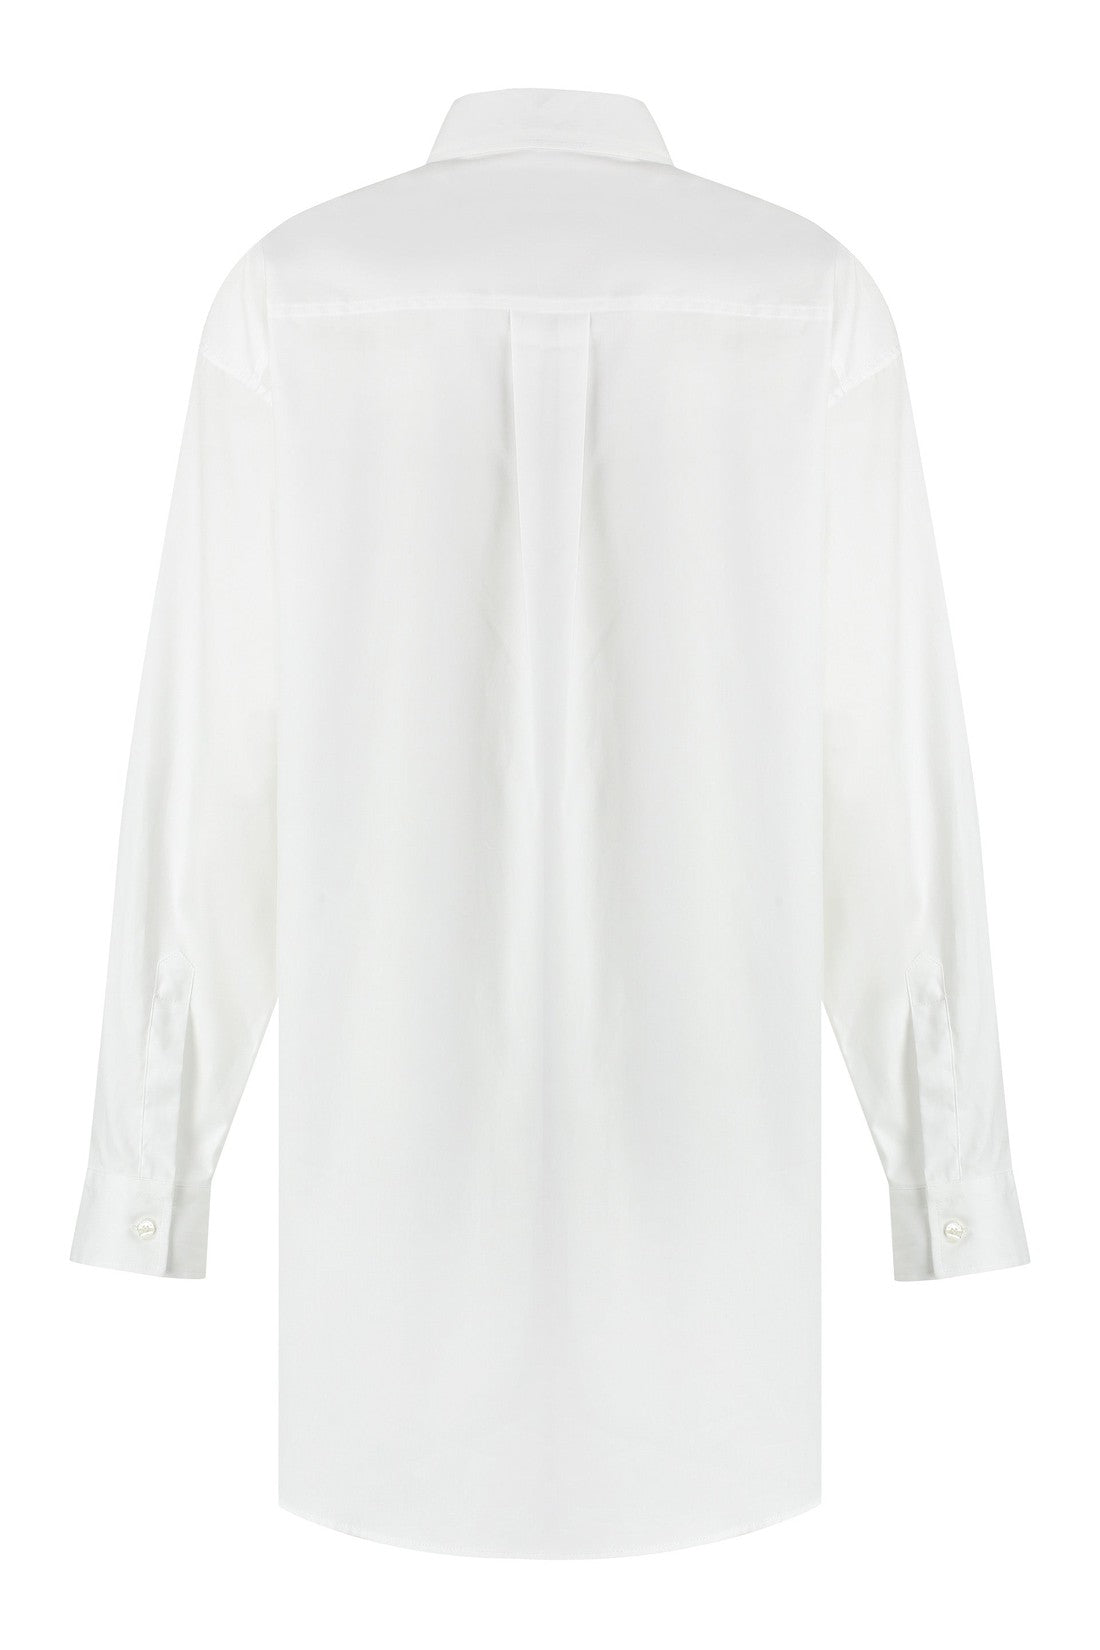 Etro-OUTLET-SALE-Cotton shirt-ARCHIVIST